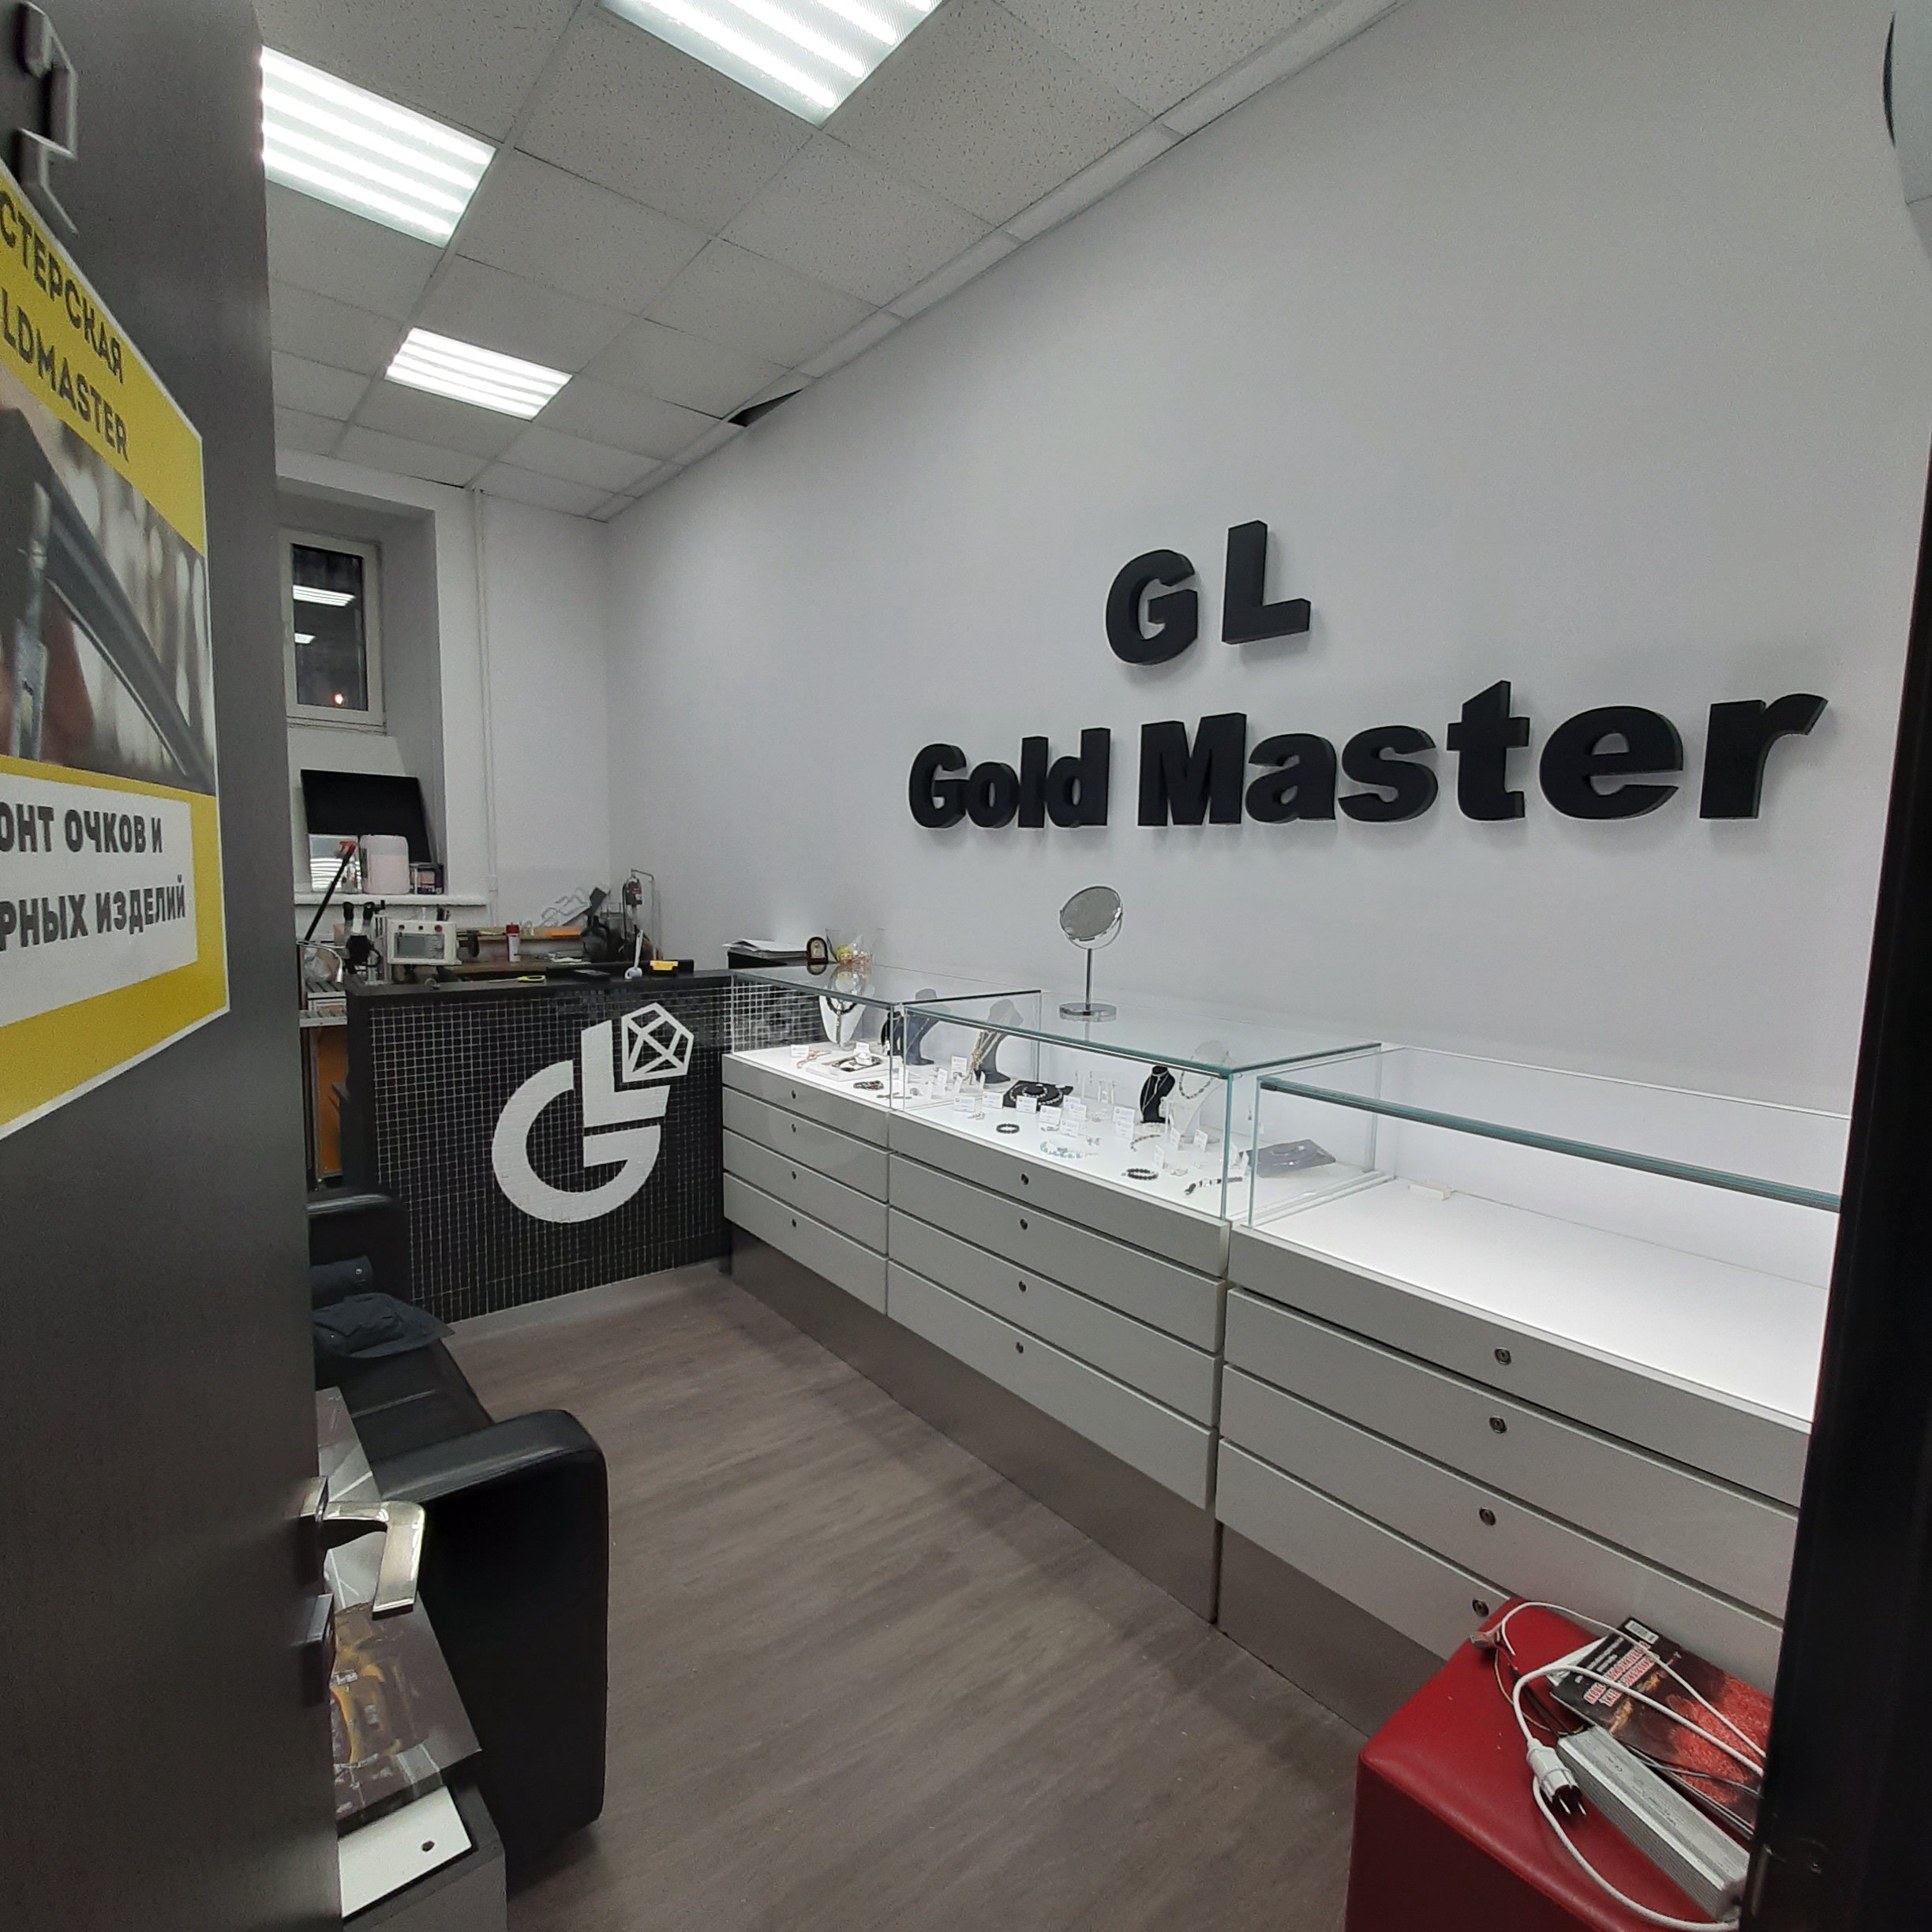 Gl gold master, мастерская по ремонту очков и ювелирных изделий, Снайперская улица, 9Б, цокольный этаж